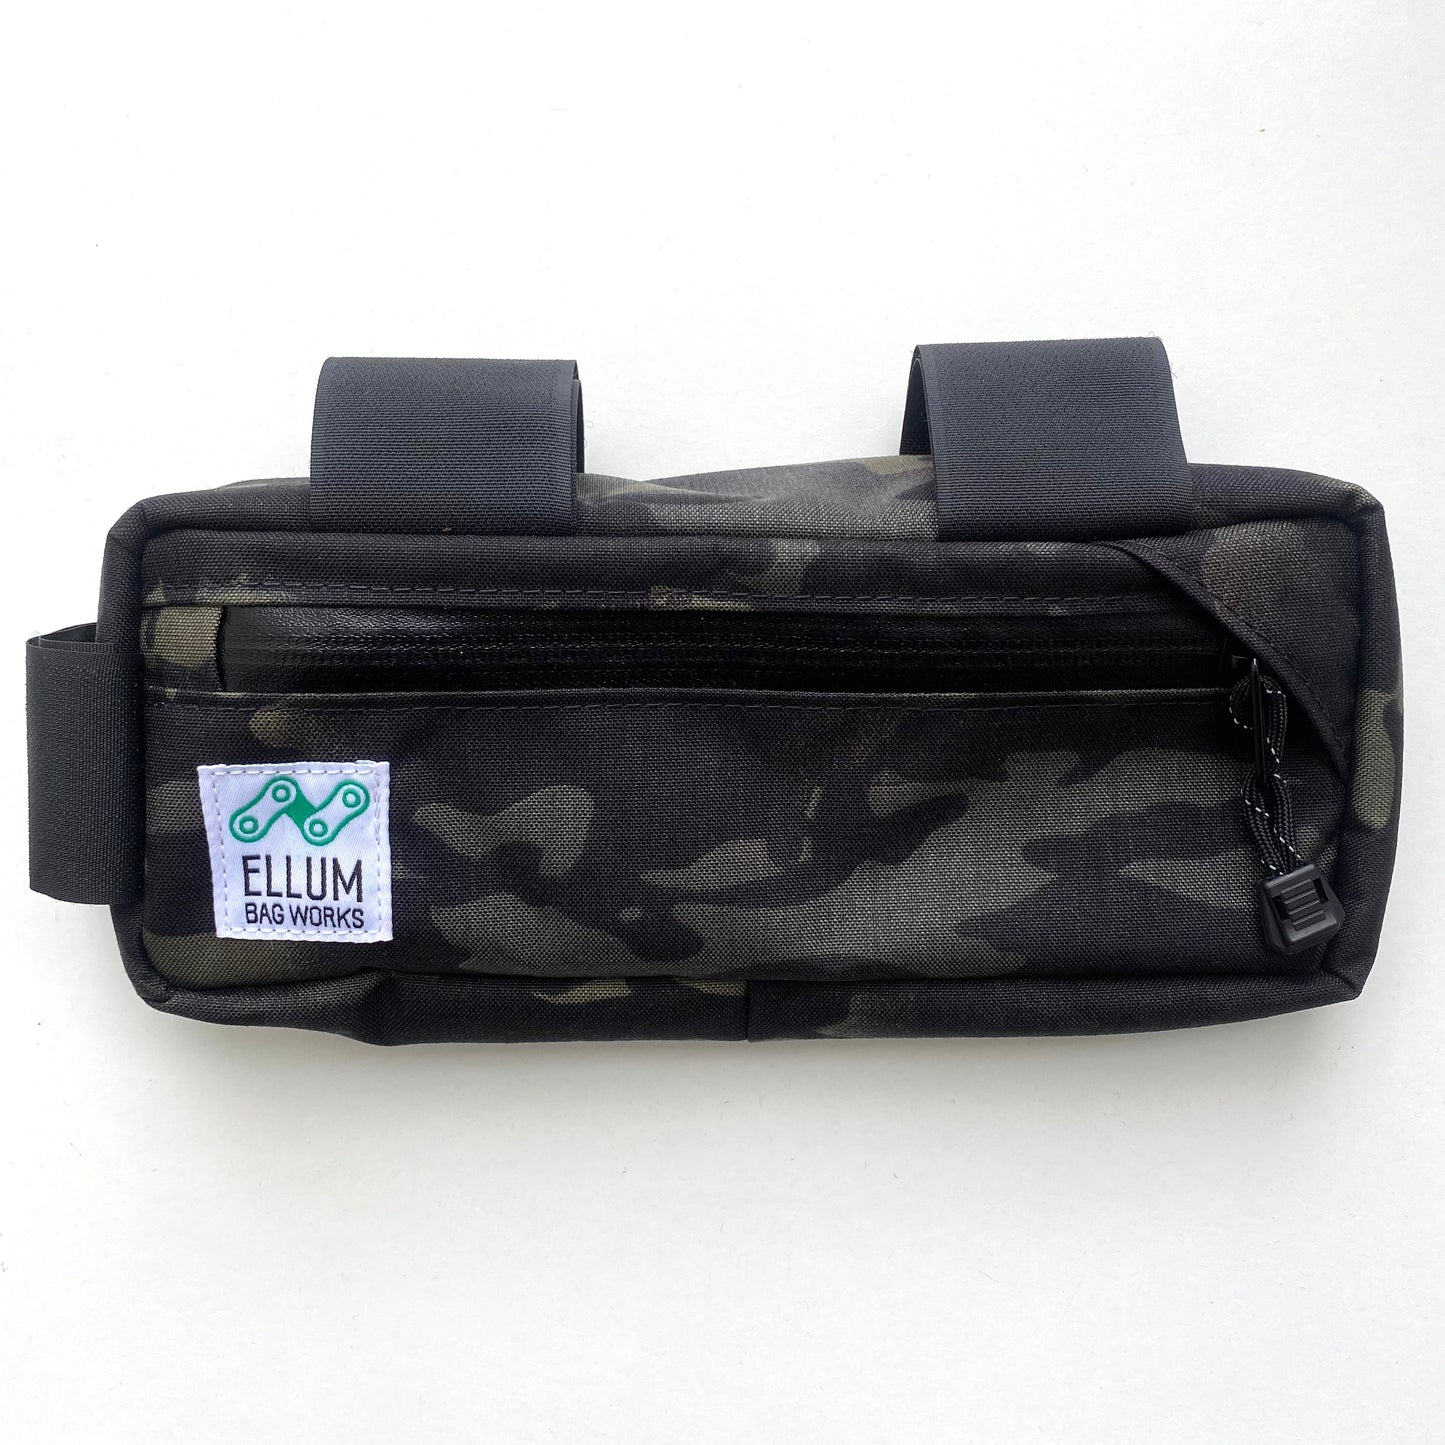 ELLUM BAG WORKS Carryout Frame Pack - Black Multicam